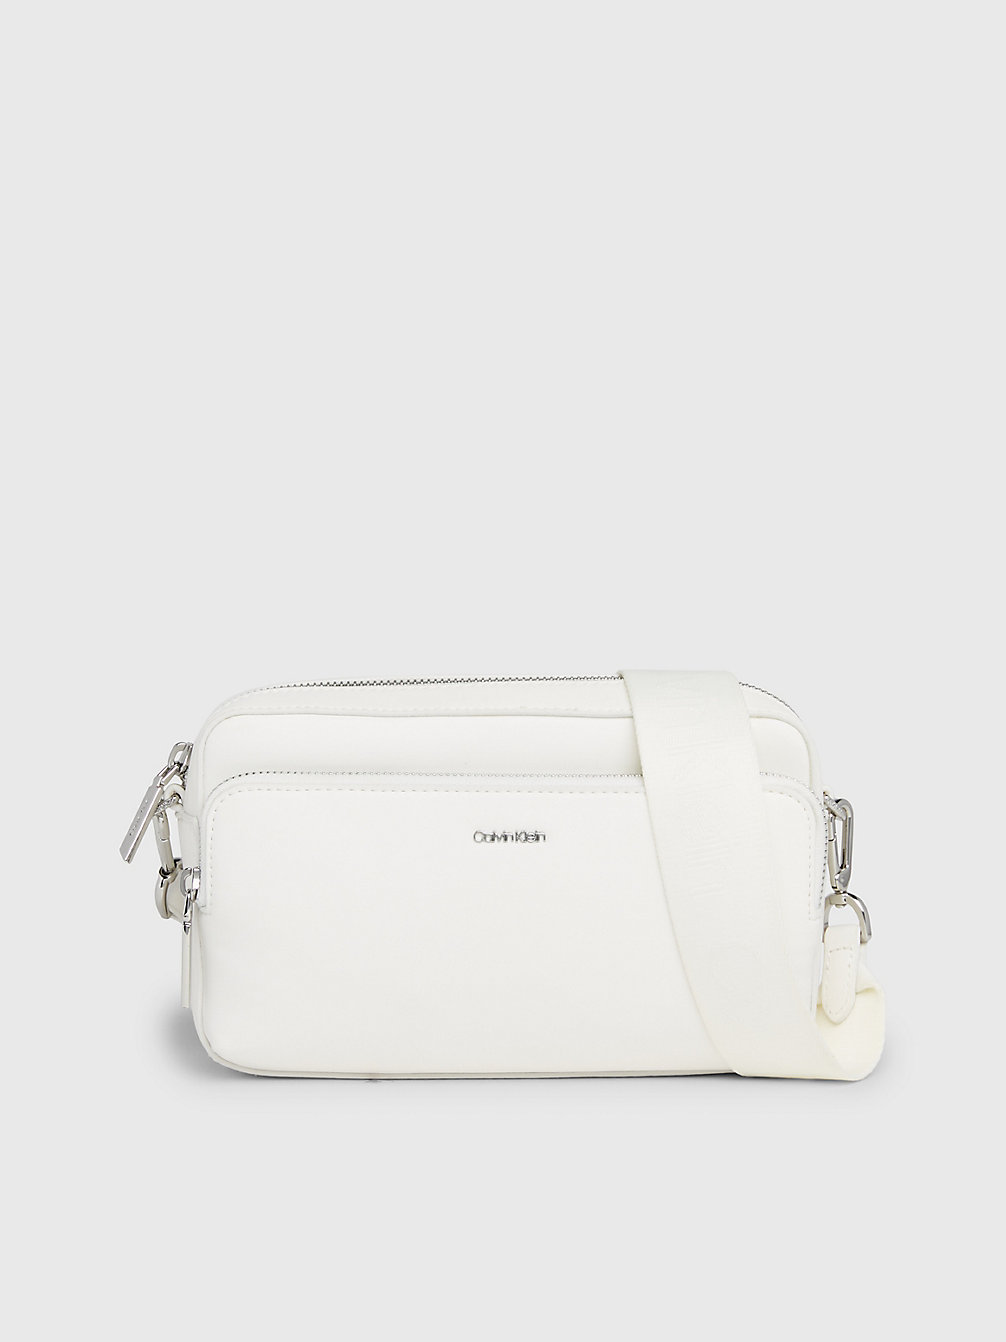 BRIGHT WHITE Crossbody Bag undefined Women Calvin Klein